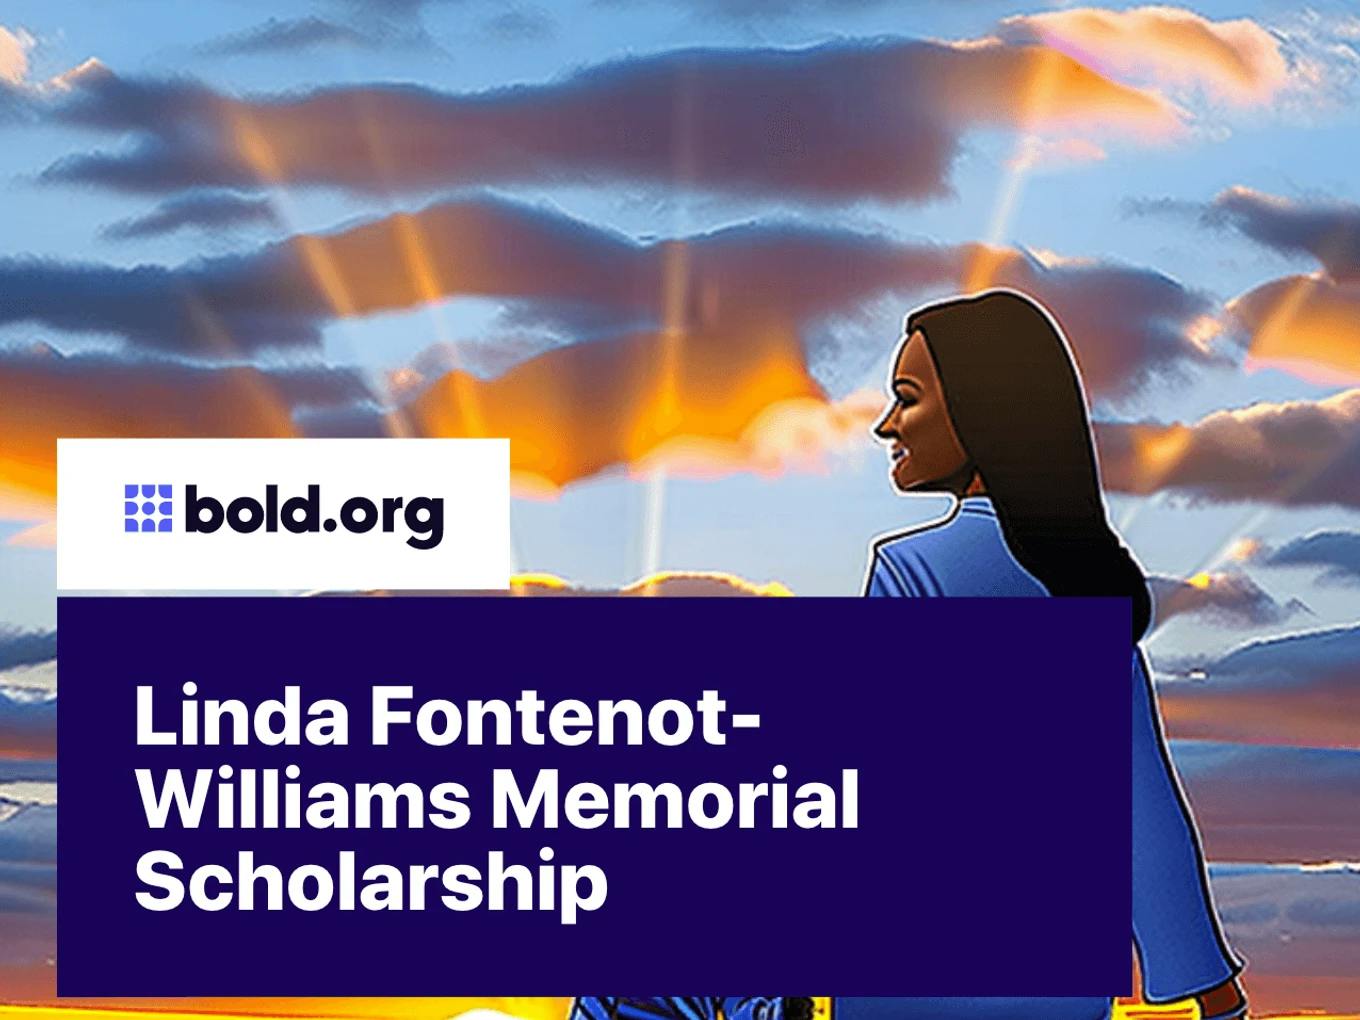 Linda Fontenot-Williams Memorial Scholarship